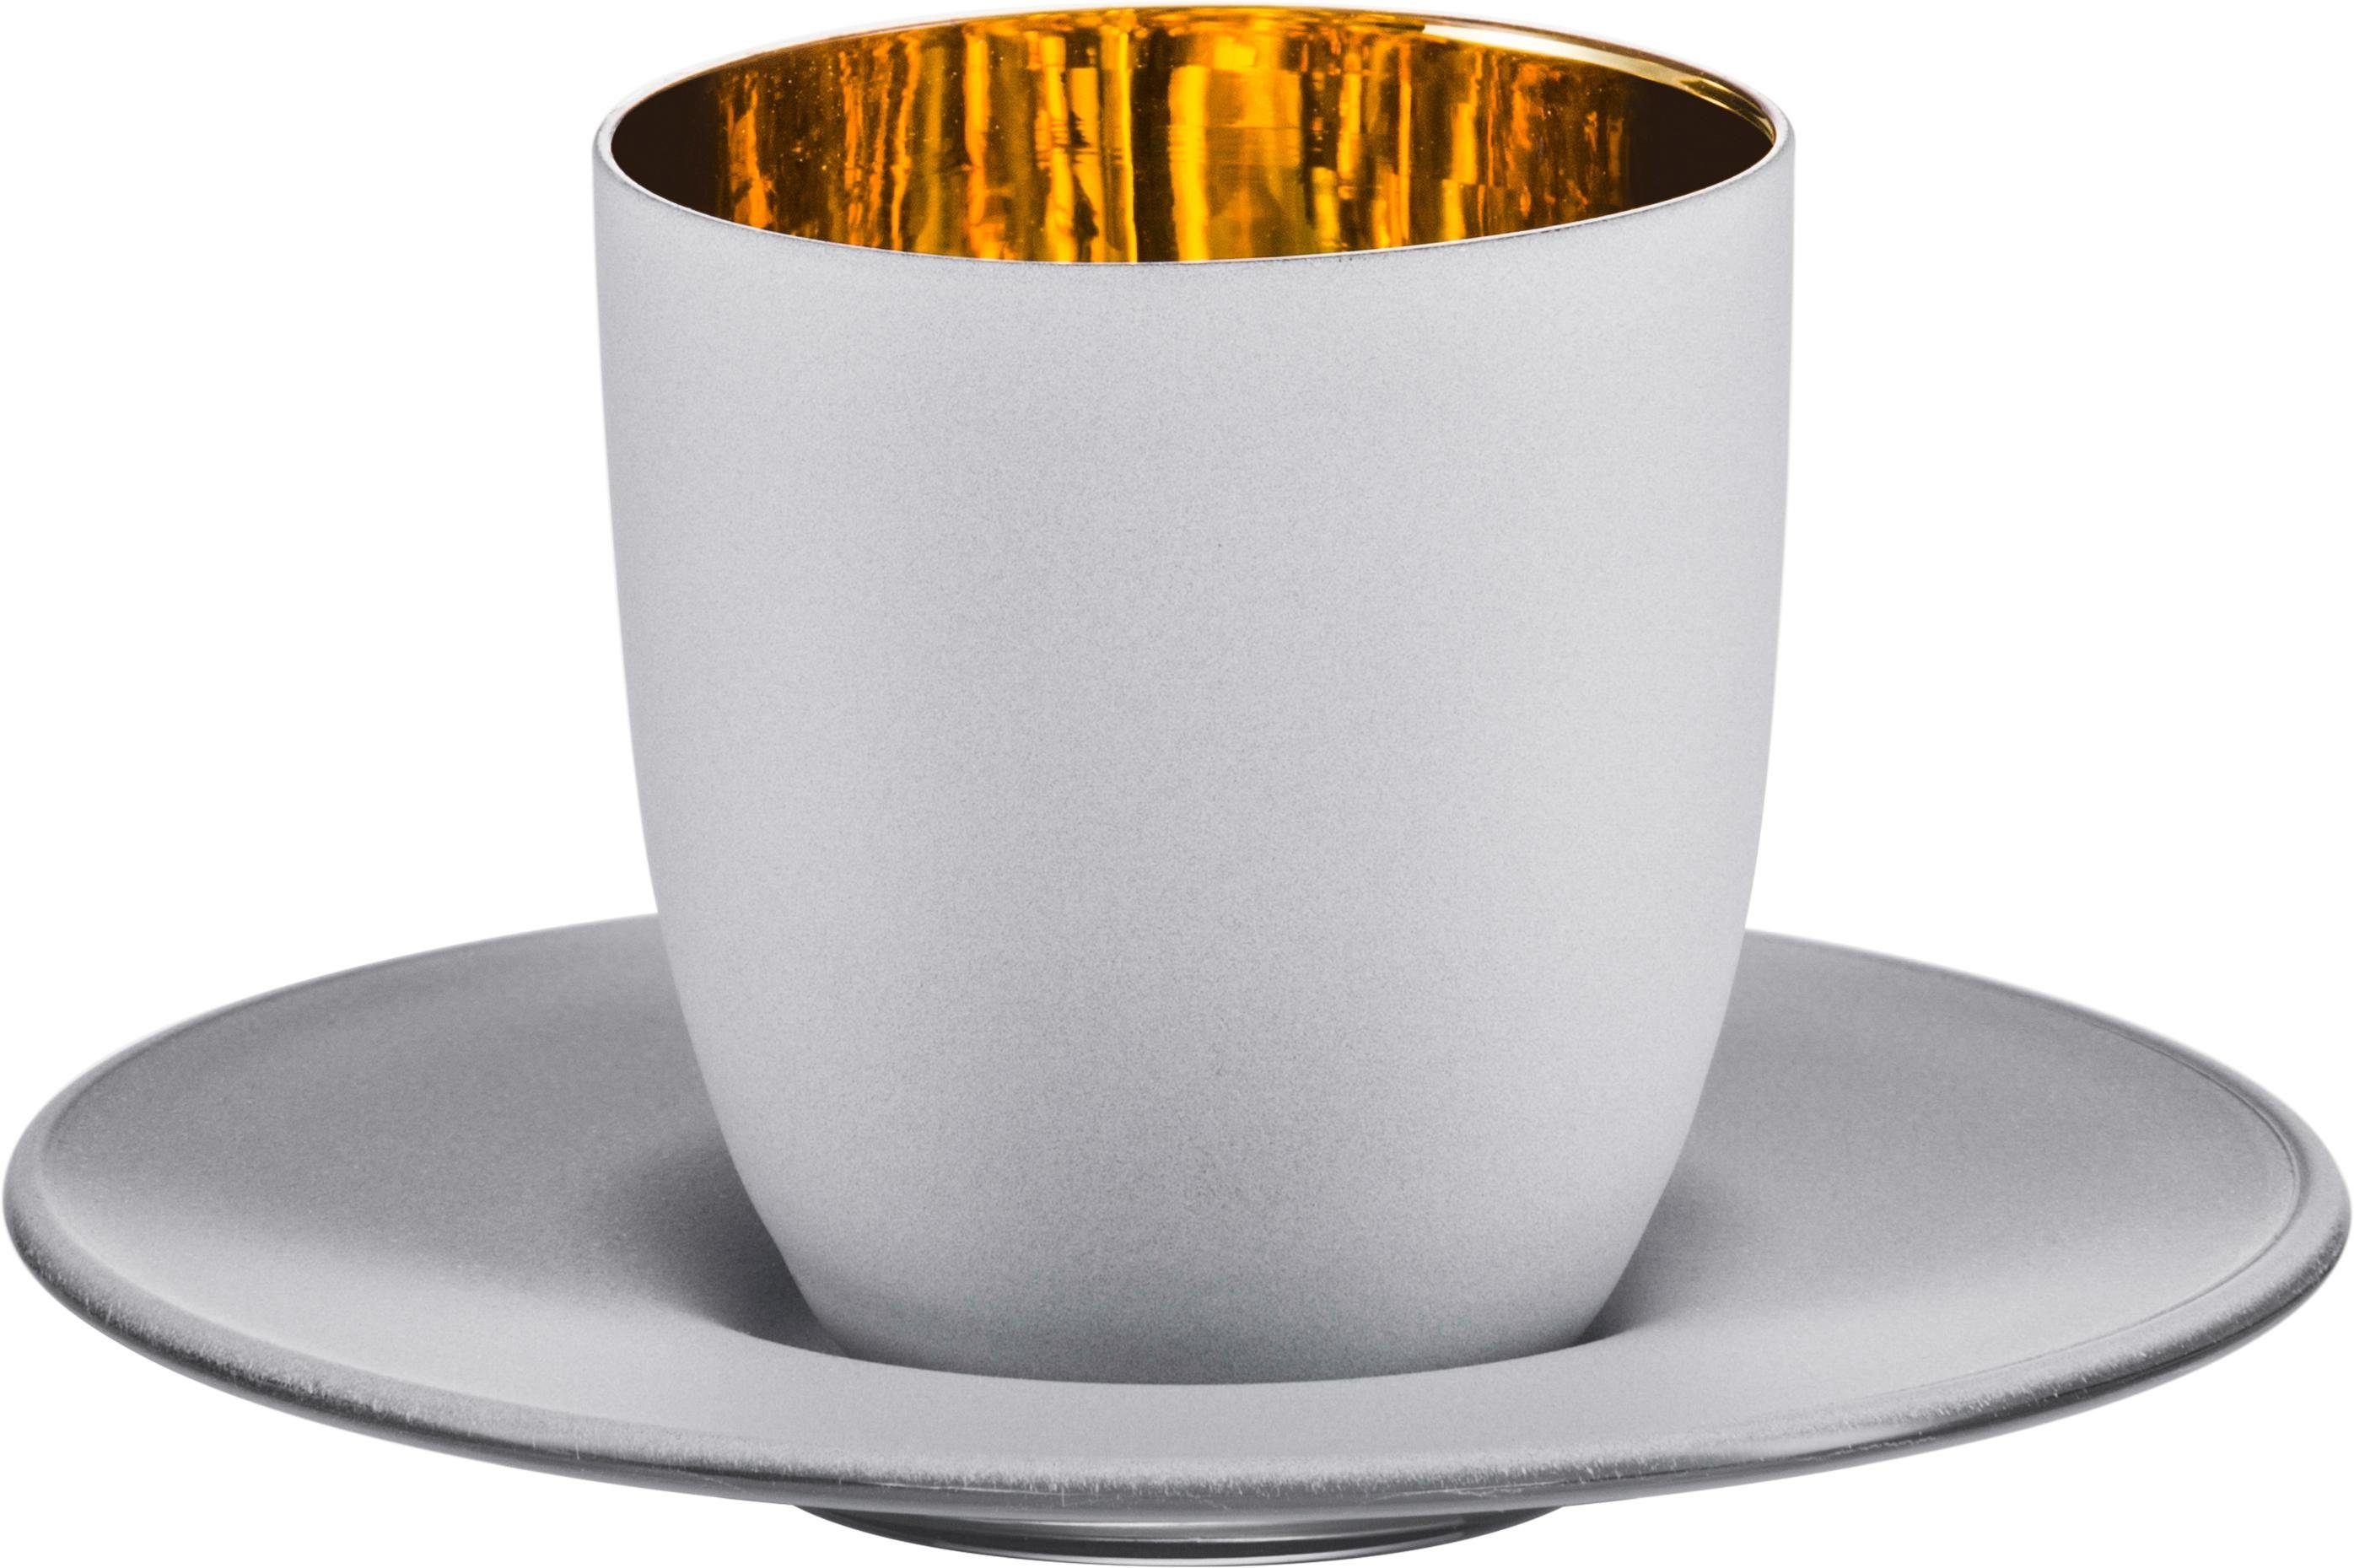 Kristallglas, bleifrei, Handwäsche in Echtgold, wird empfohlen 100 2-teilig, Germany, Espressoglas handgefertigt, Eisch gold, Cosmo Made ml,